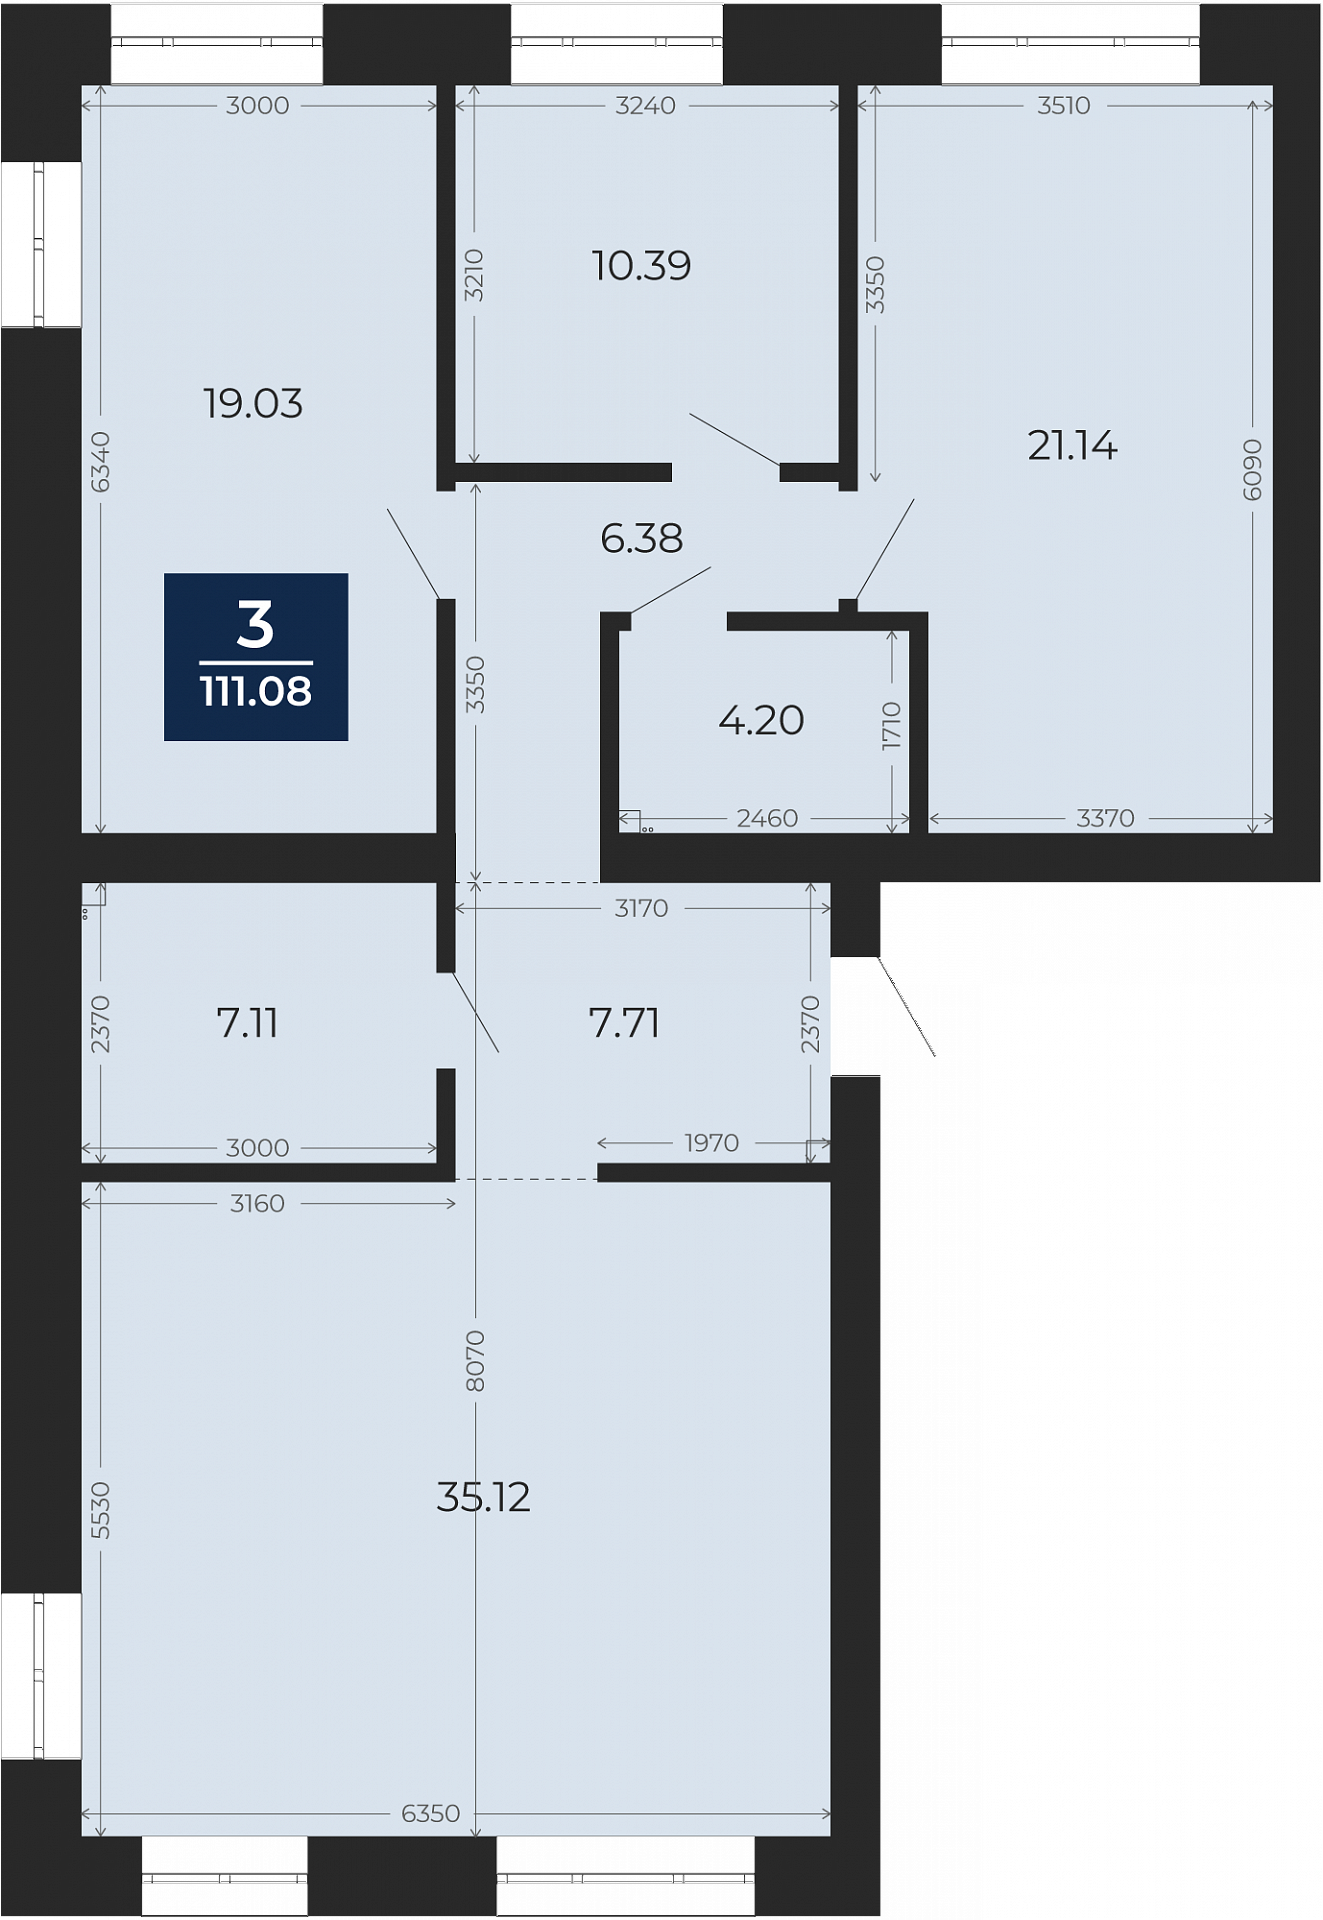 Квартира № 216, 3-комнатная, 111.08 кв. м, 5 этаж